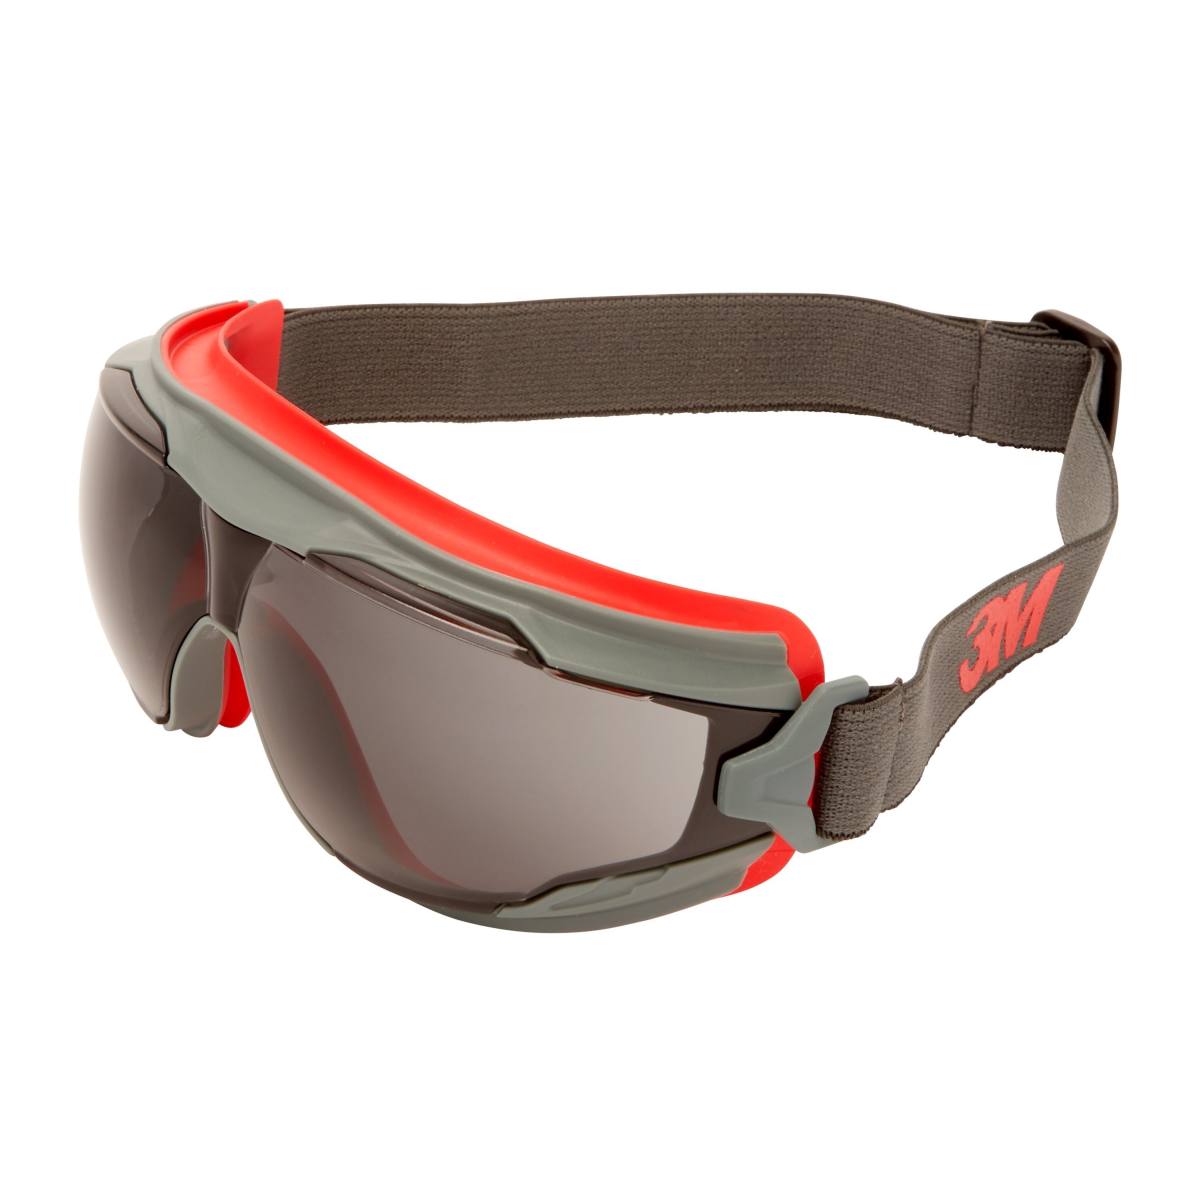 3M GoggleGear 500 Lunettes-masque GG502SGAF-EU, monture rouge-gris, oculaires gris, serre-tête en néoprène noir